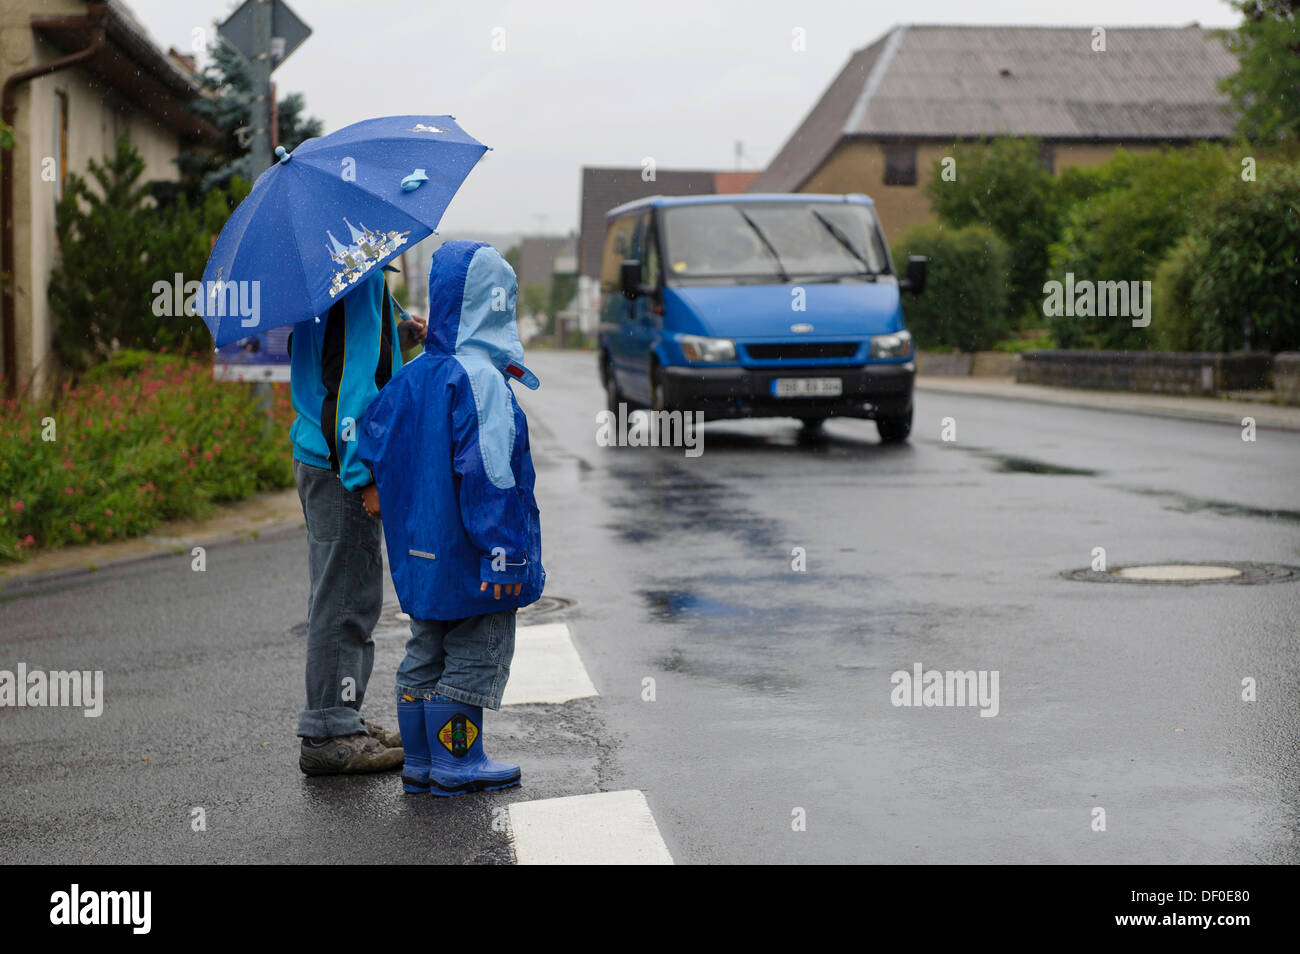 Deux enfants, 4 et 8 ans, en attendant de traverser la rue sous la pluie, bien qu'une voiture approche, Assamstadt, Bade-Wurtemberg Banque D'Images